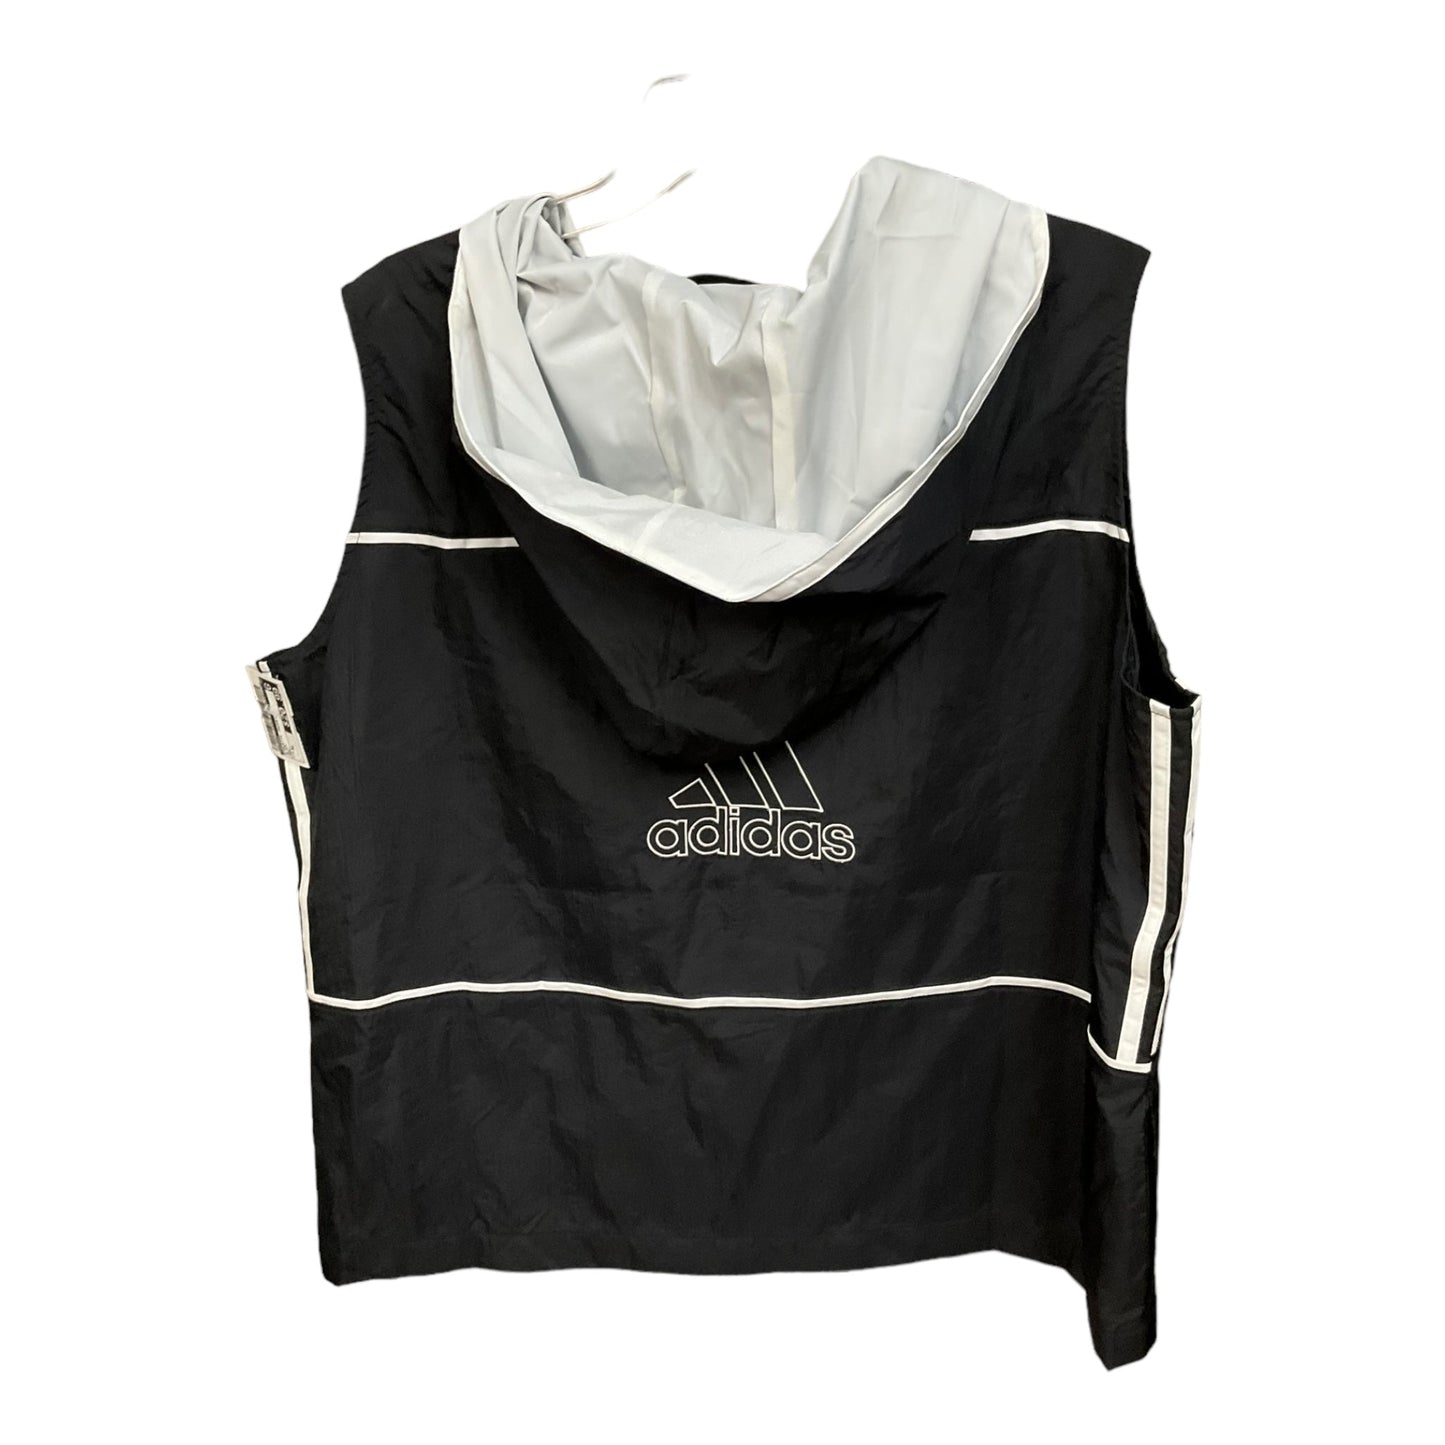 Black Athletic Jacket Adidas, Size Xl